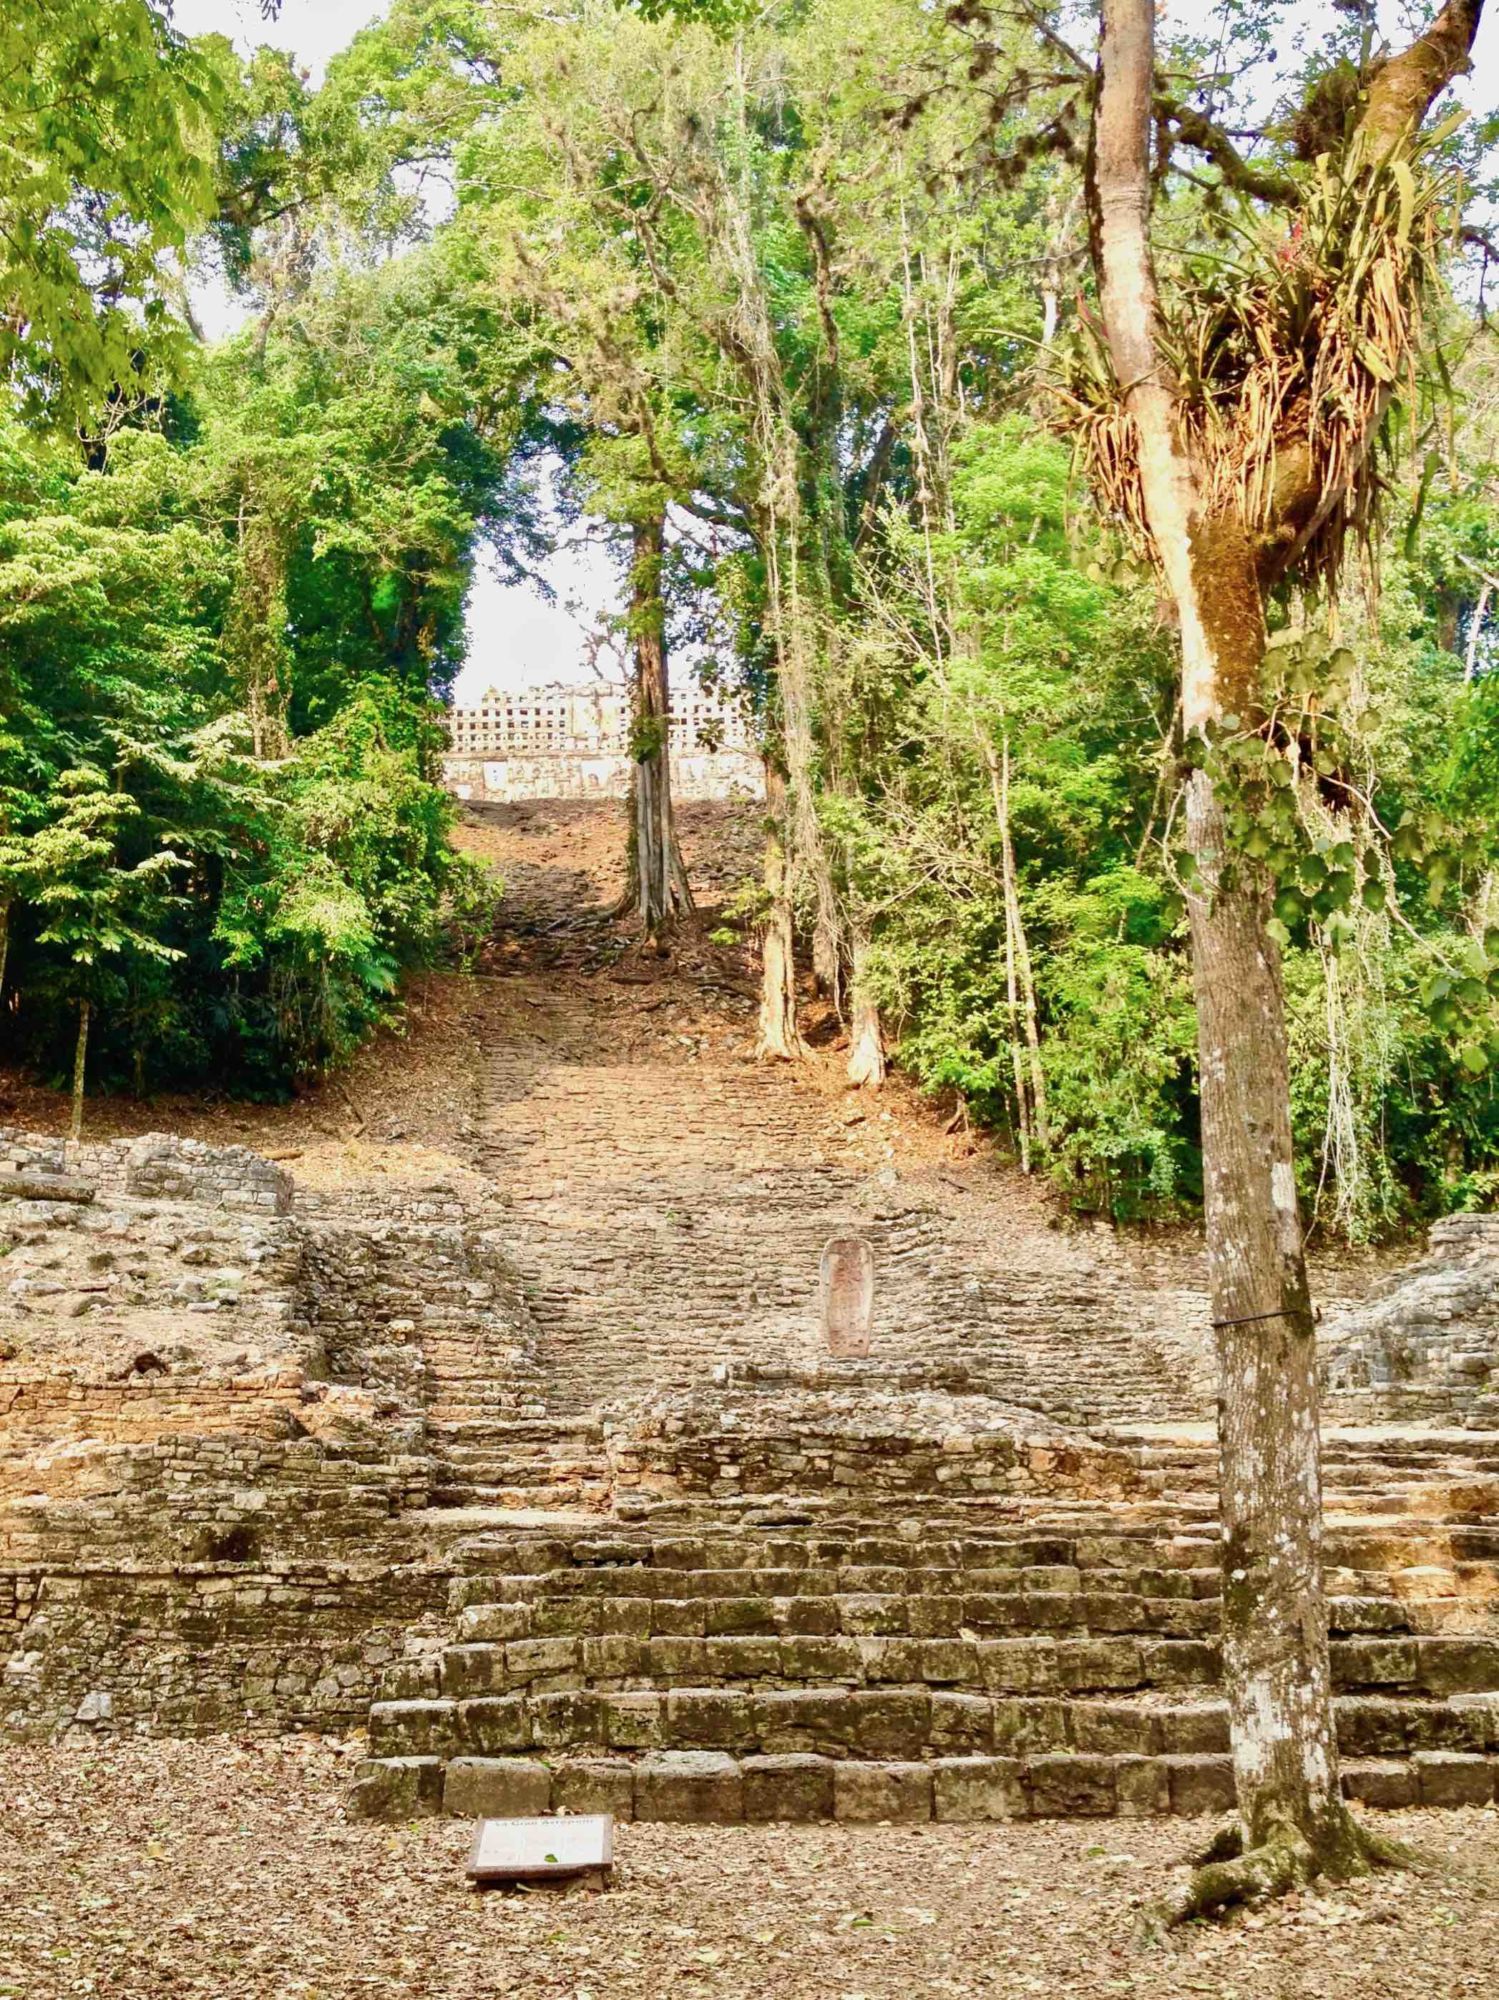 V Yaxchilánu je na pyramidách částečně ponechán původní porost